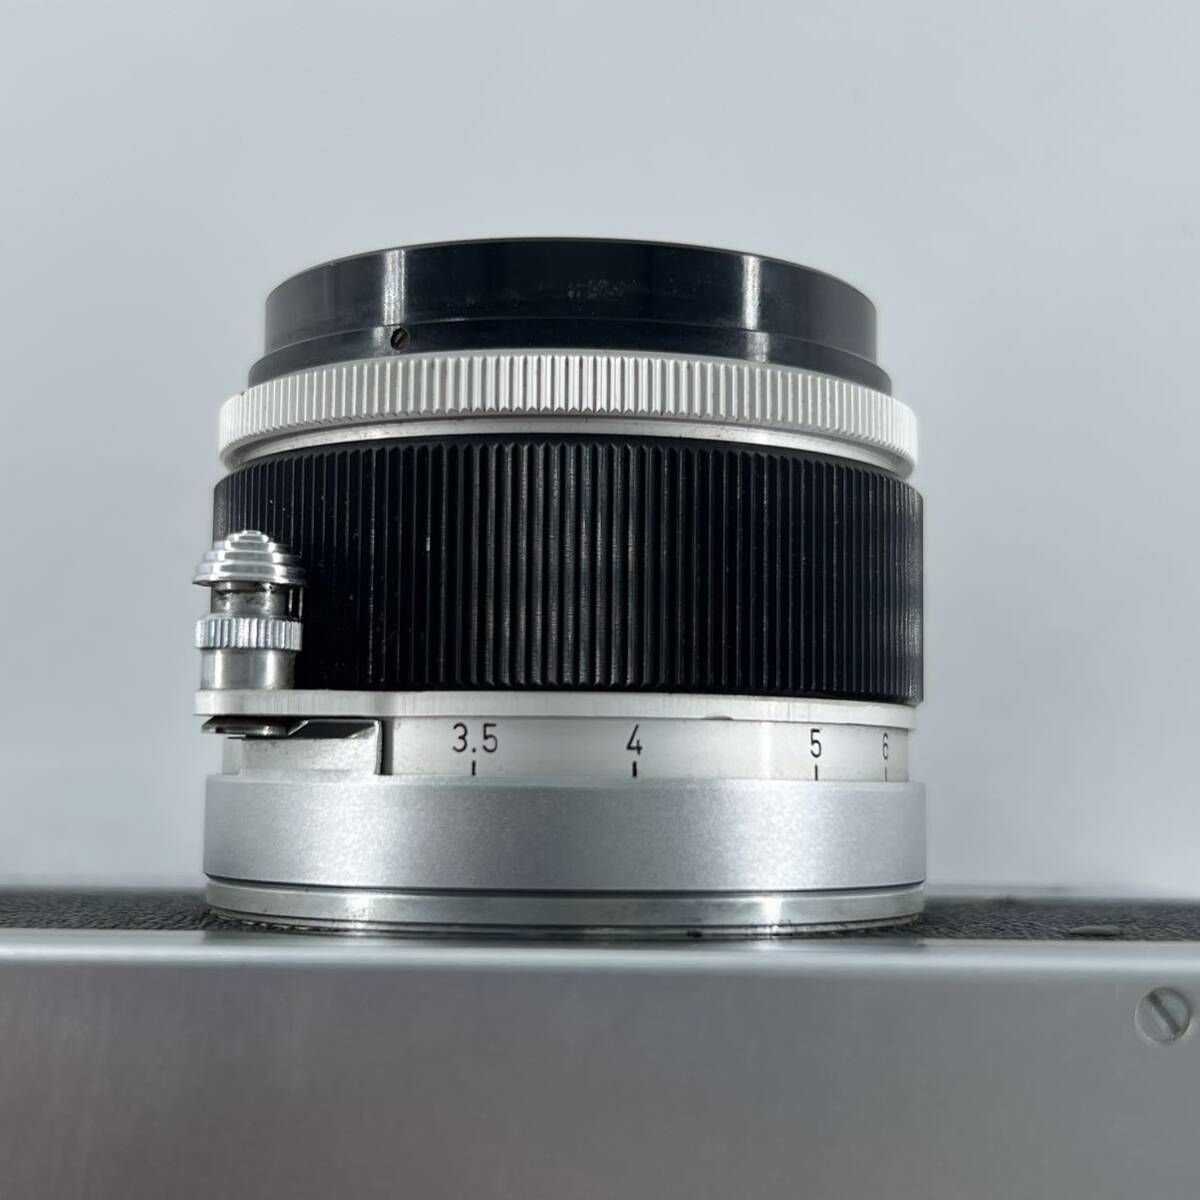 G4s Canon キャノン P 50mm f1.8 レンズセット カメラ フィルムカメラ シャッター音確認済み_画像8